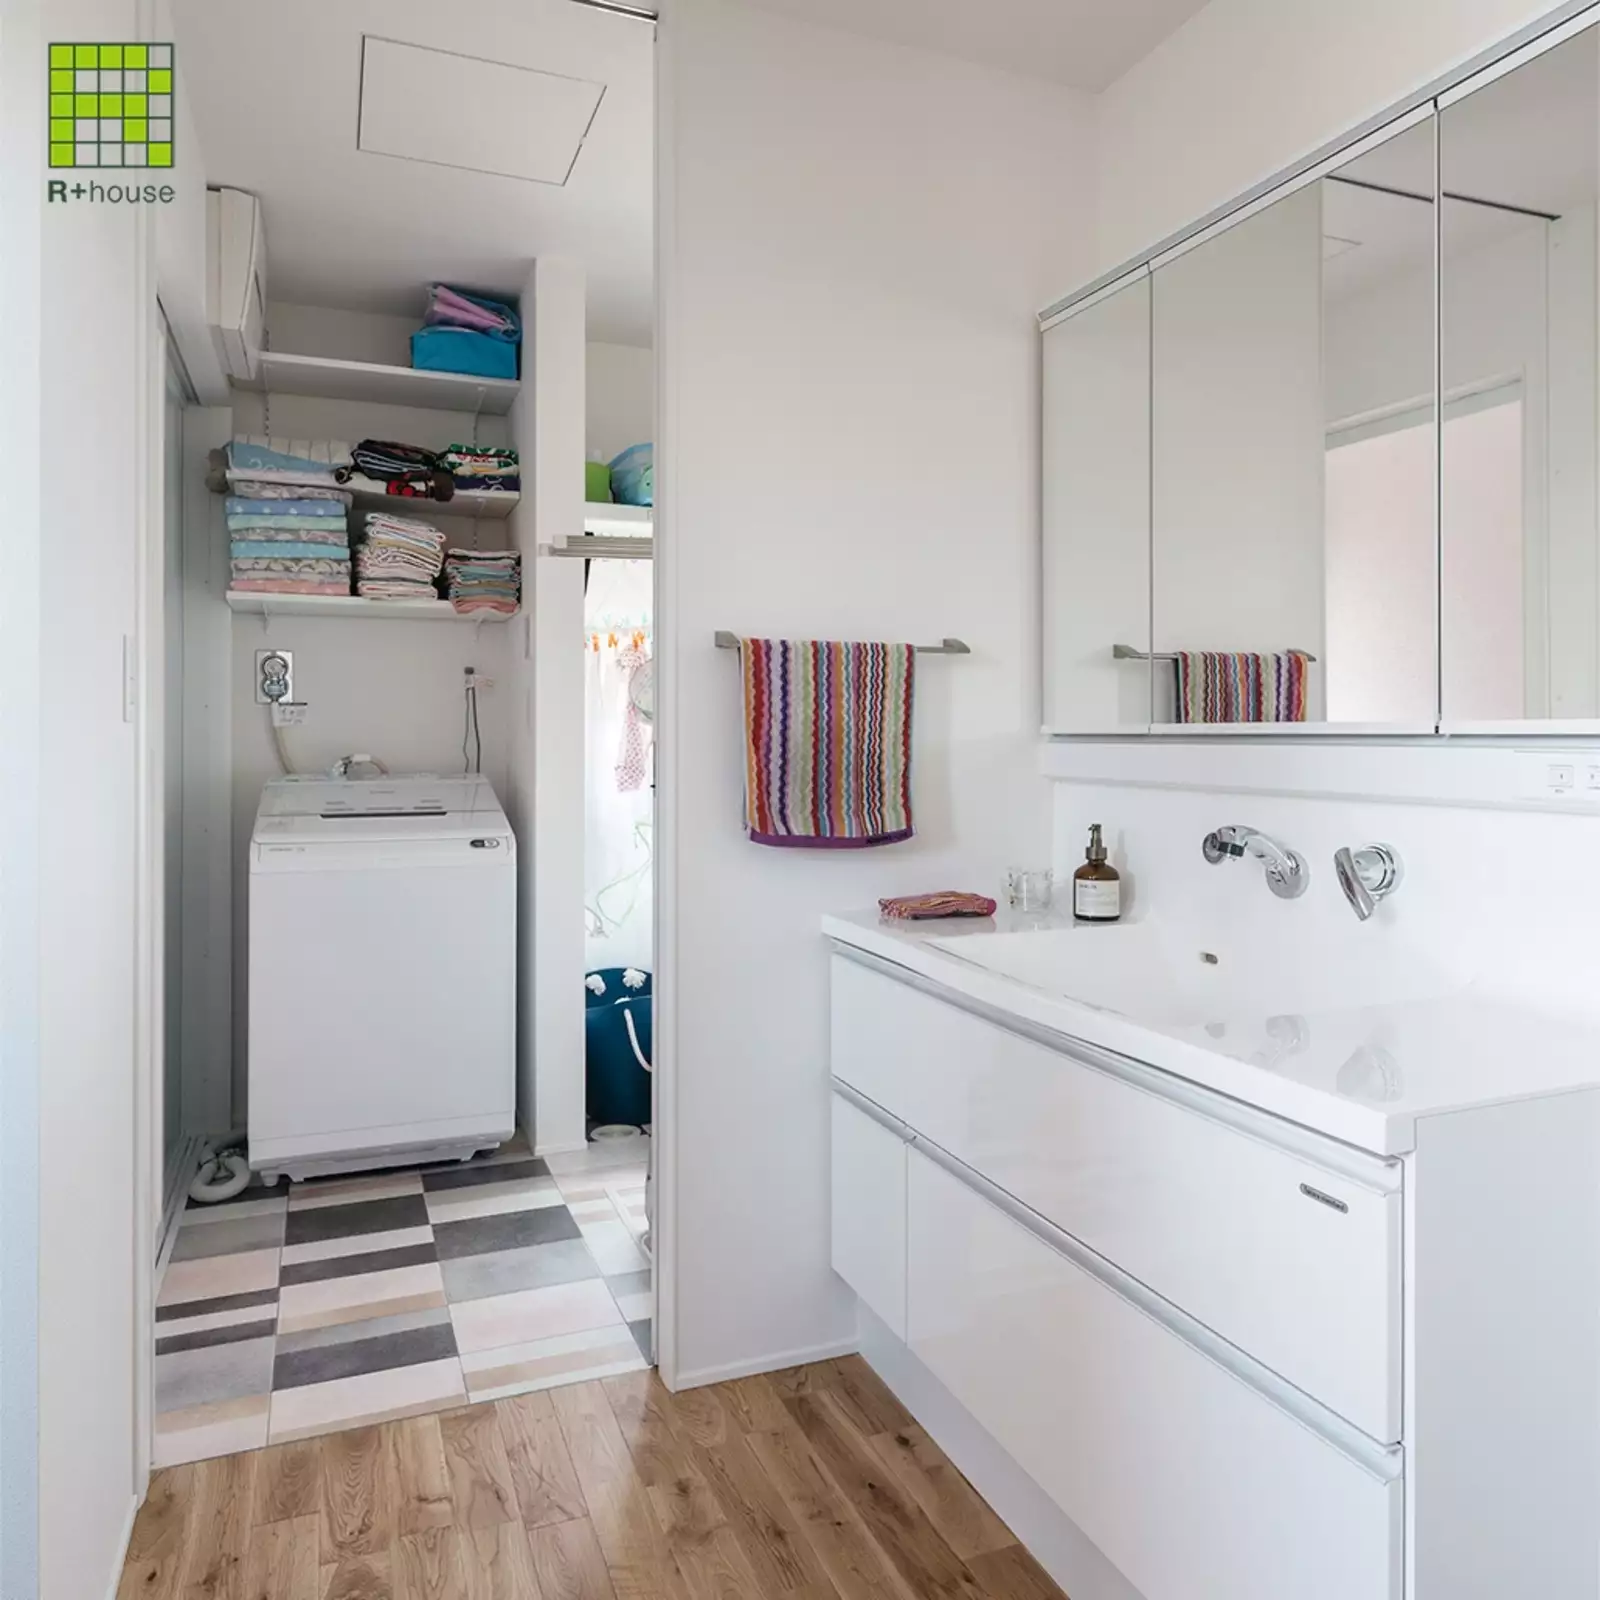 R+houseの物件の洗面台の写真です。白い大き目の洗面台は使い勝手がよさそう。奥には洗濯スペースと脱衣室がある。